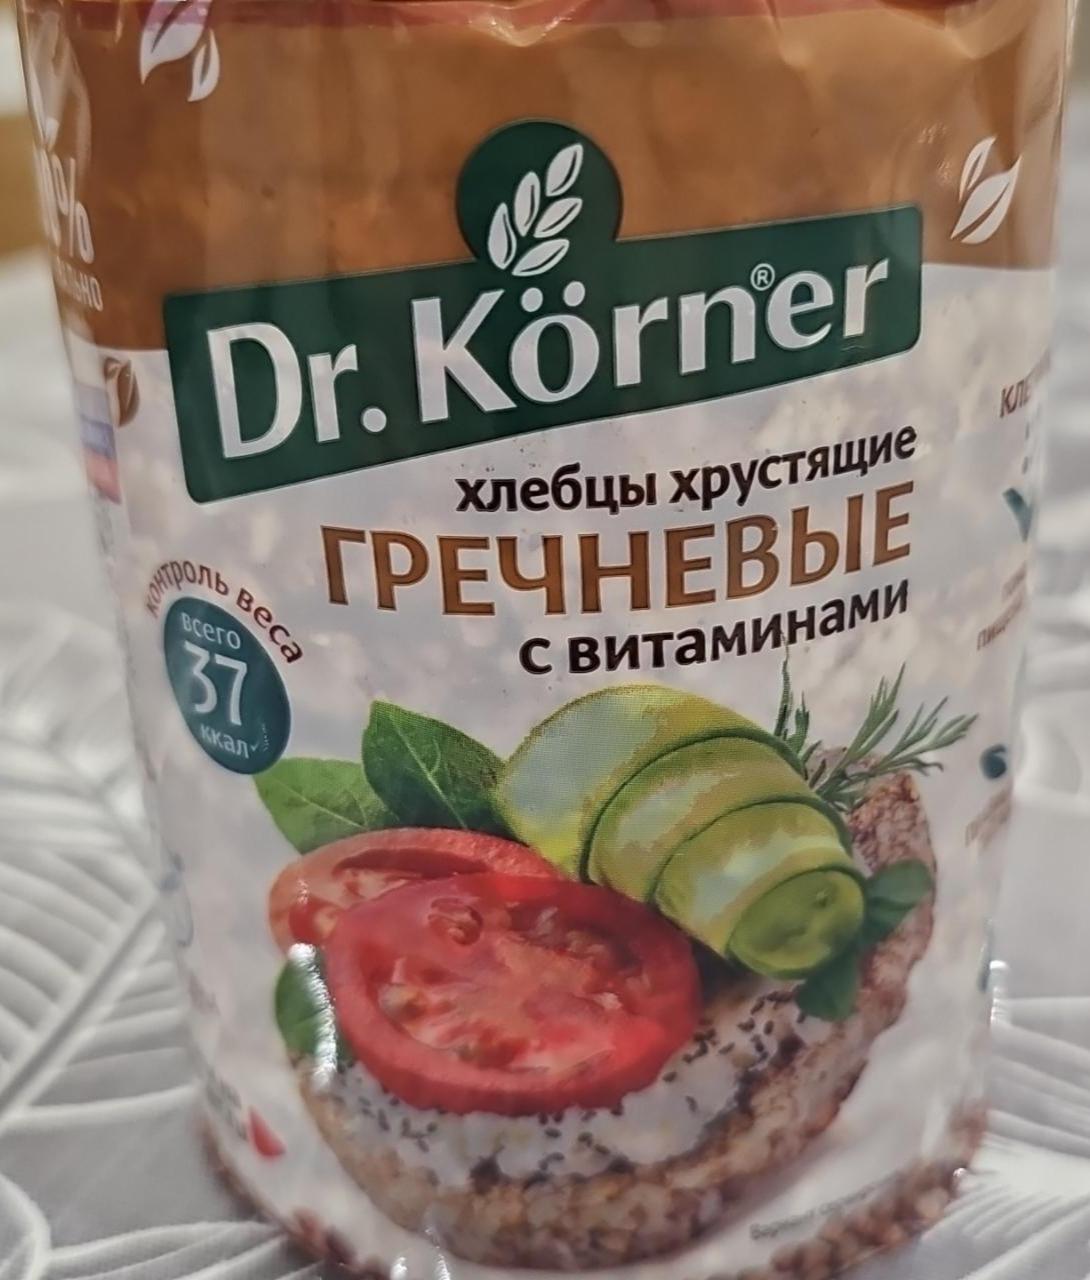 Фото - Хлебцы хрустящие гречневые с витаминами Dr. Körner